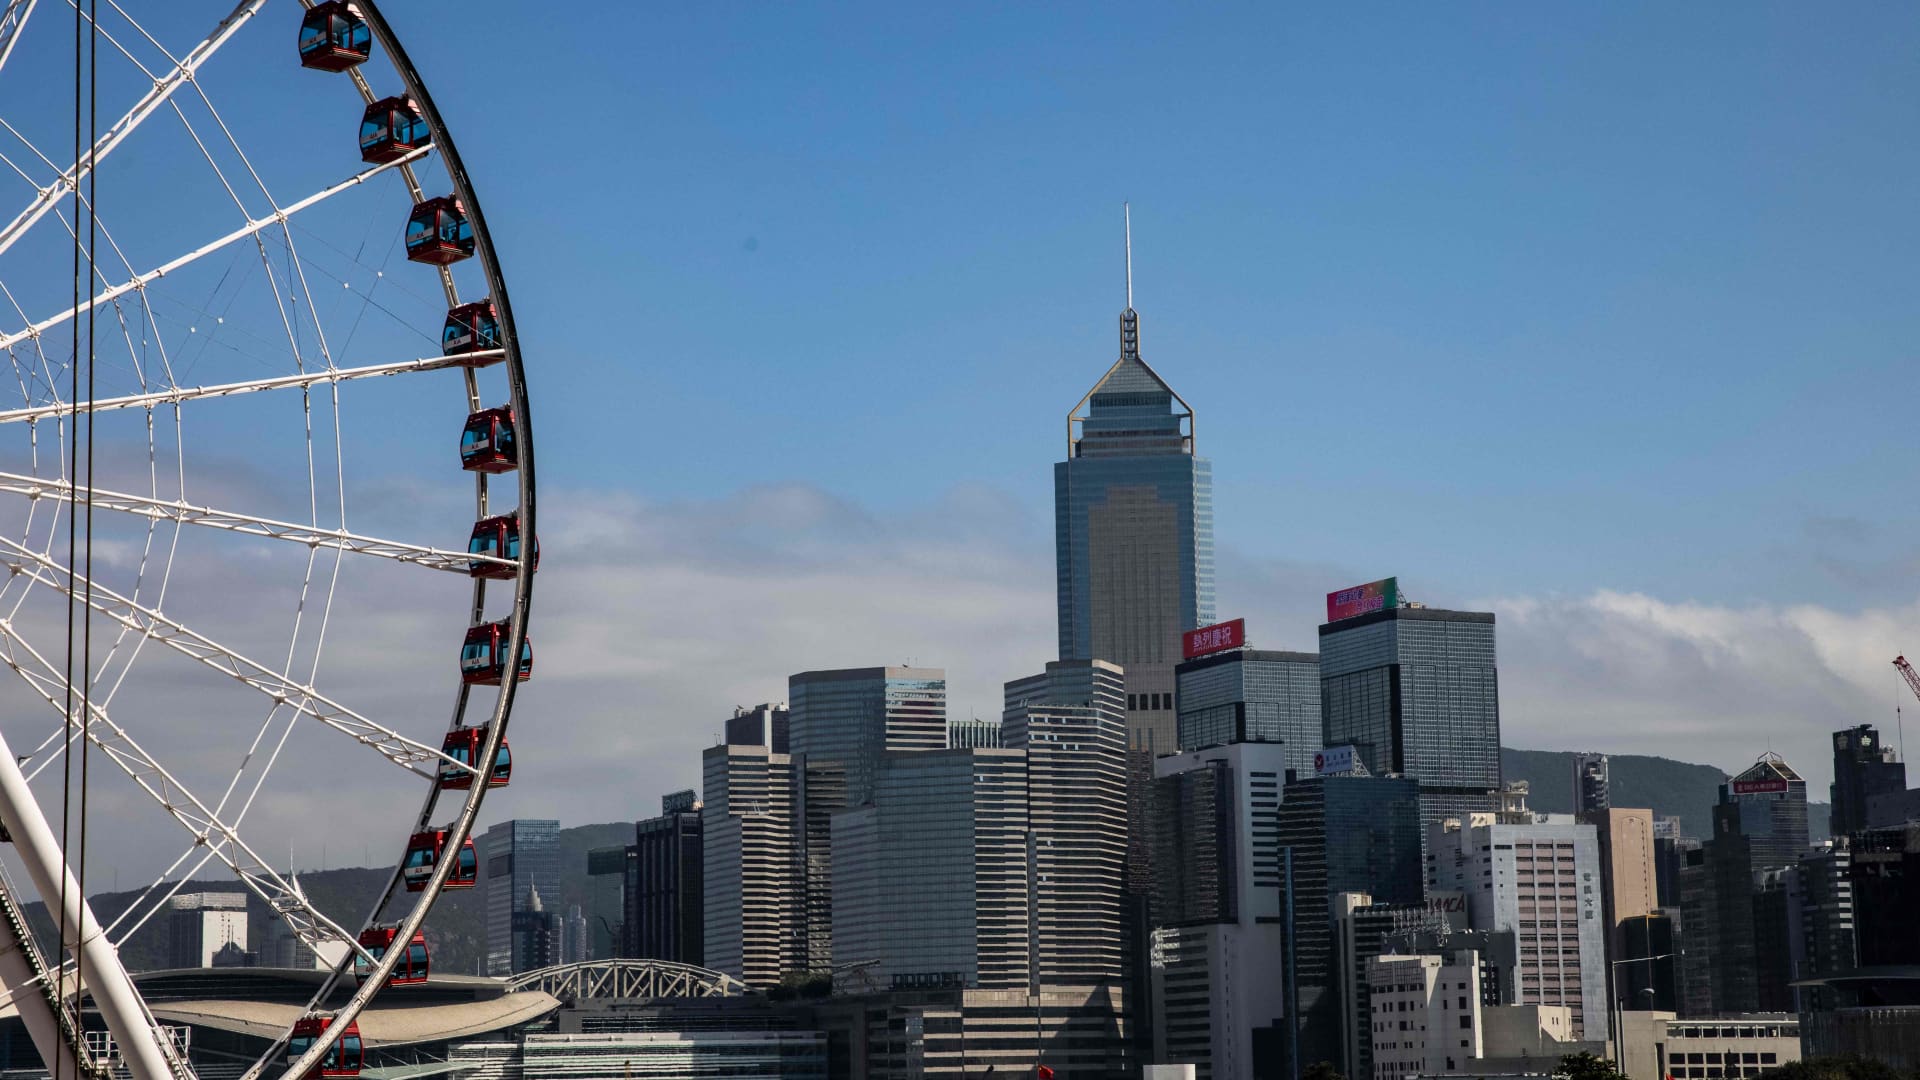 Hong Kong's Hang Seng jumps 3% led by gains in property and consumer stocks